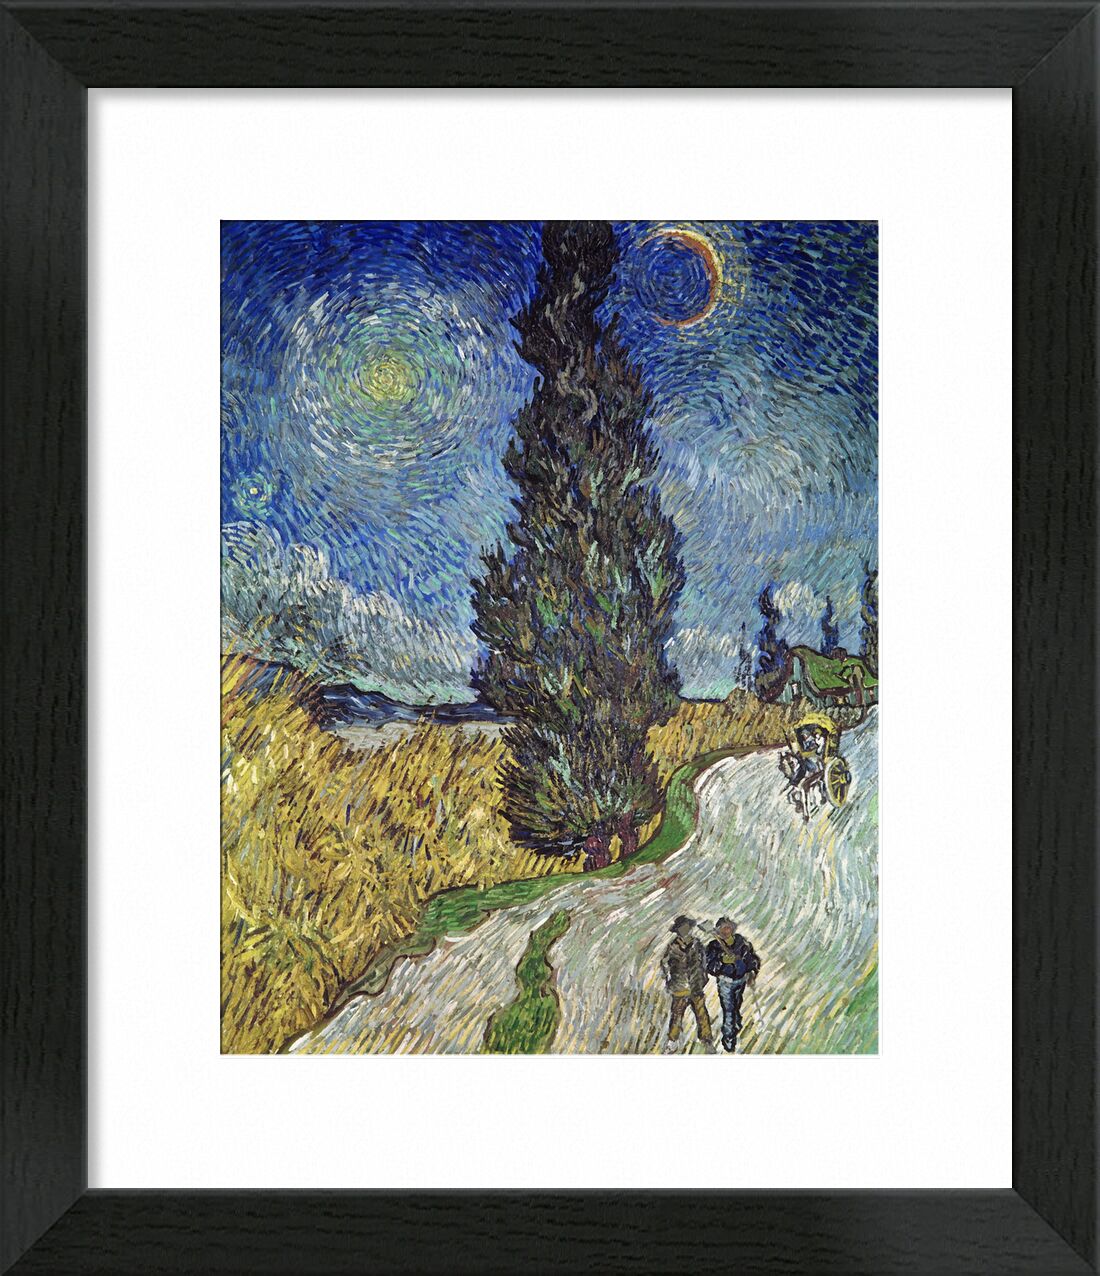 Country Road with Cypress and Star - Van Gogh von Bildende Kunst, Prodi Art, Himmel, Sonne, Star, Paar, Weg, Malerei, Van gogh